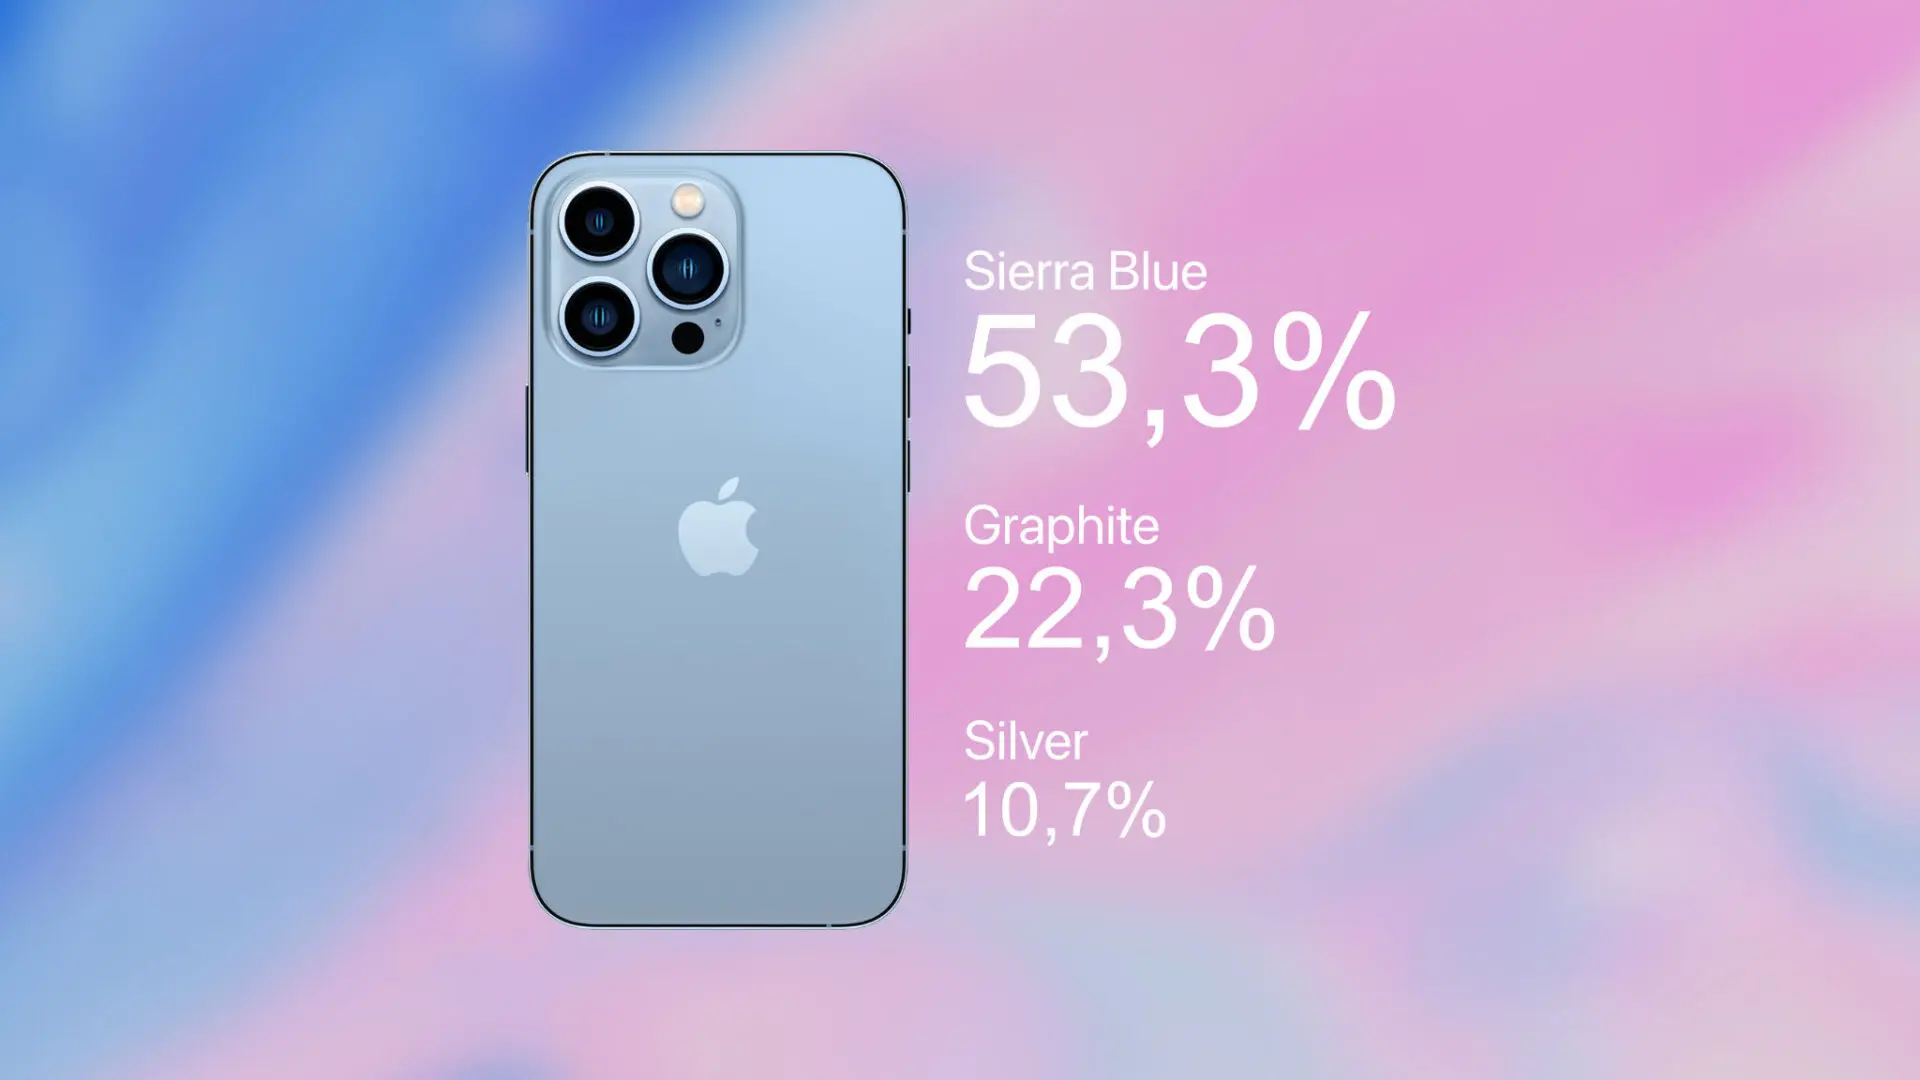 Khảo sát: Màu Sierra Blue được yêu thích nhất trên iPhone 13 Pro